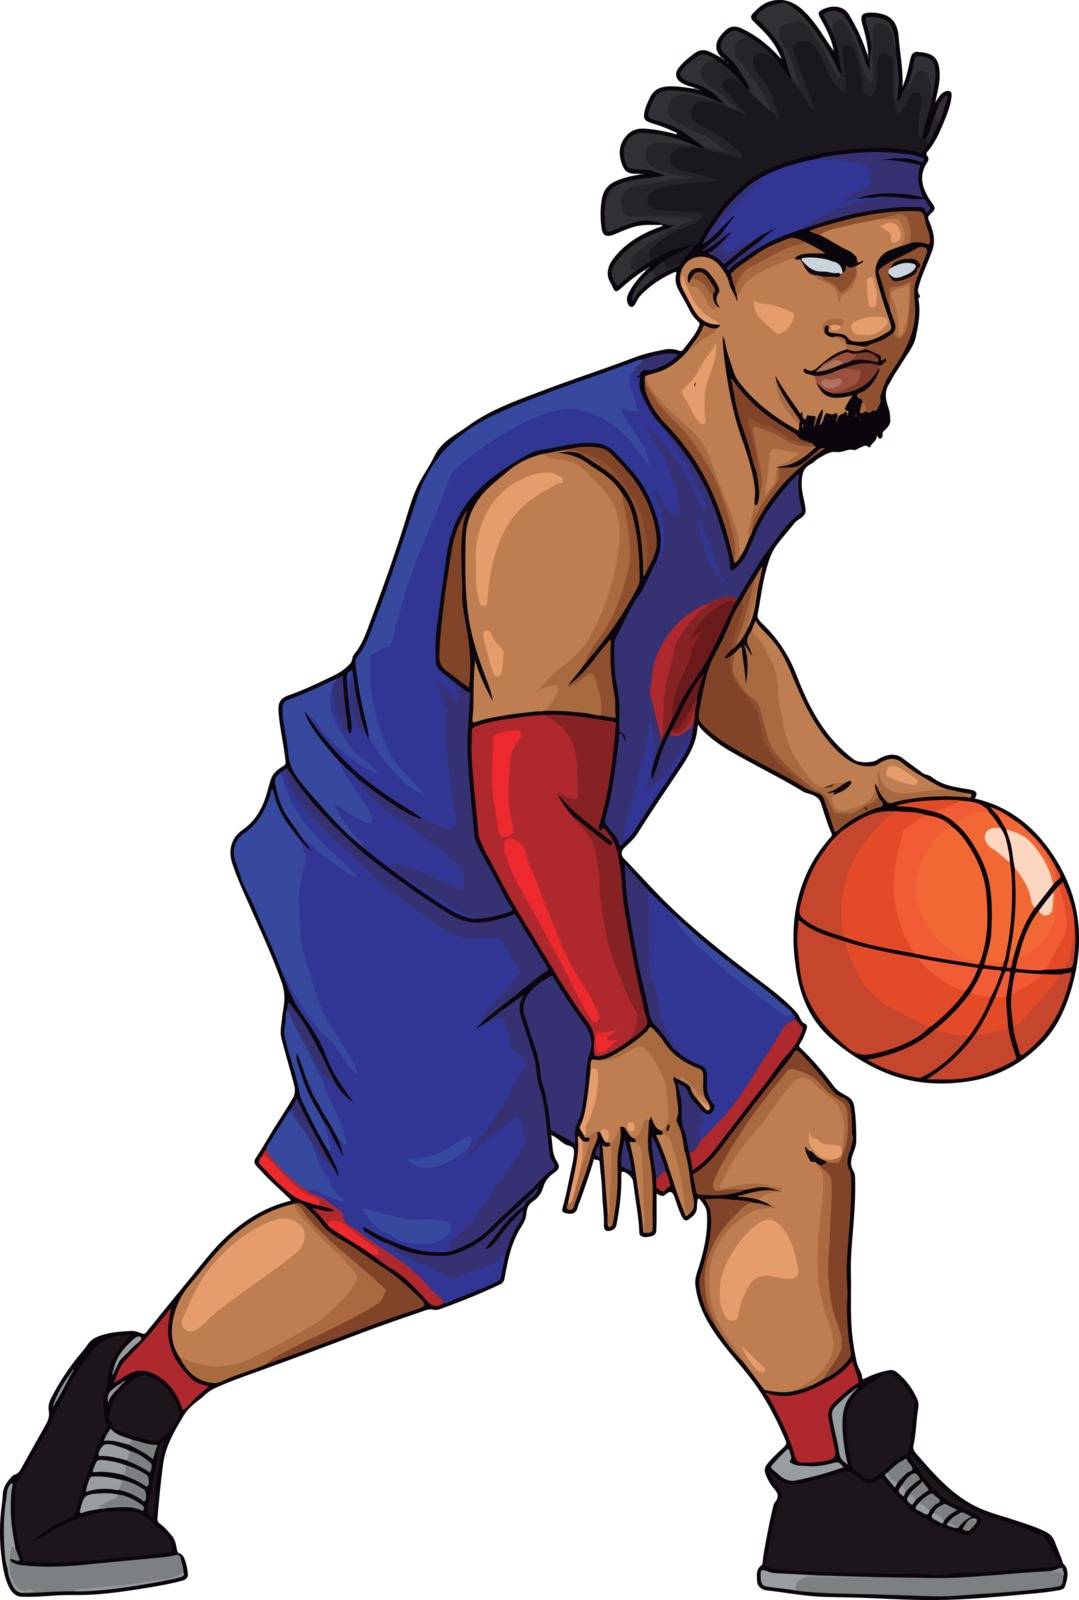 Basketball player dribbling, illustration, vector on white backg by Morphart